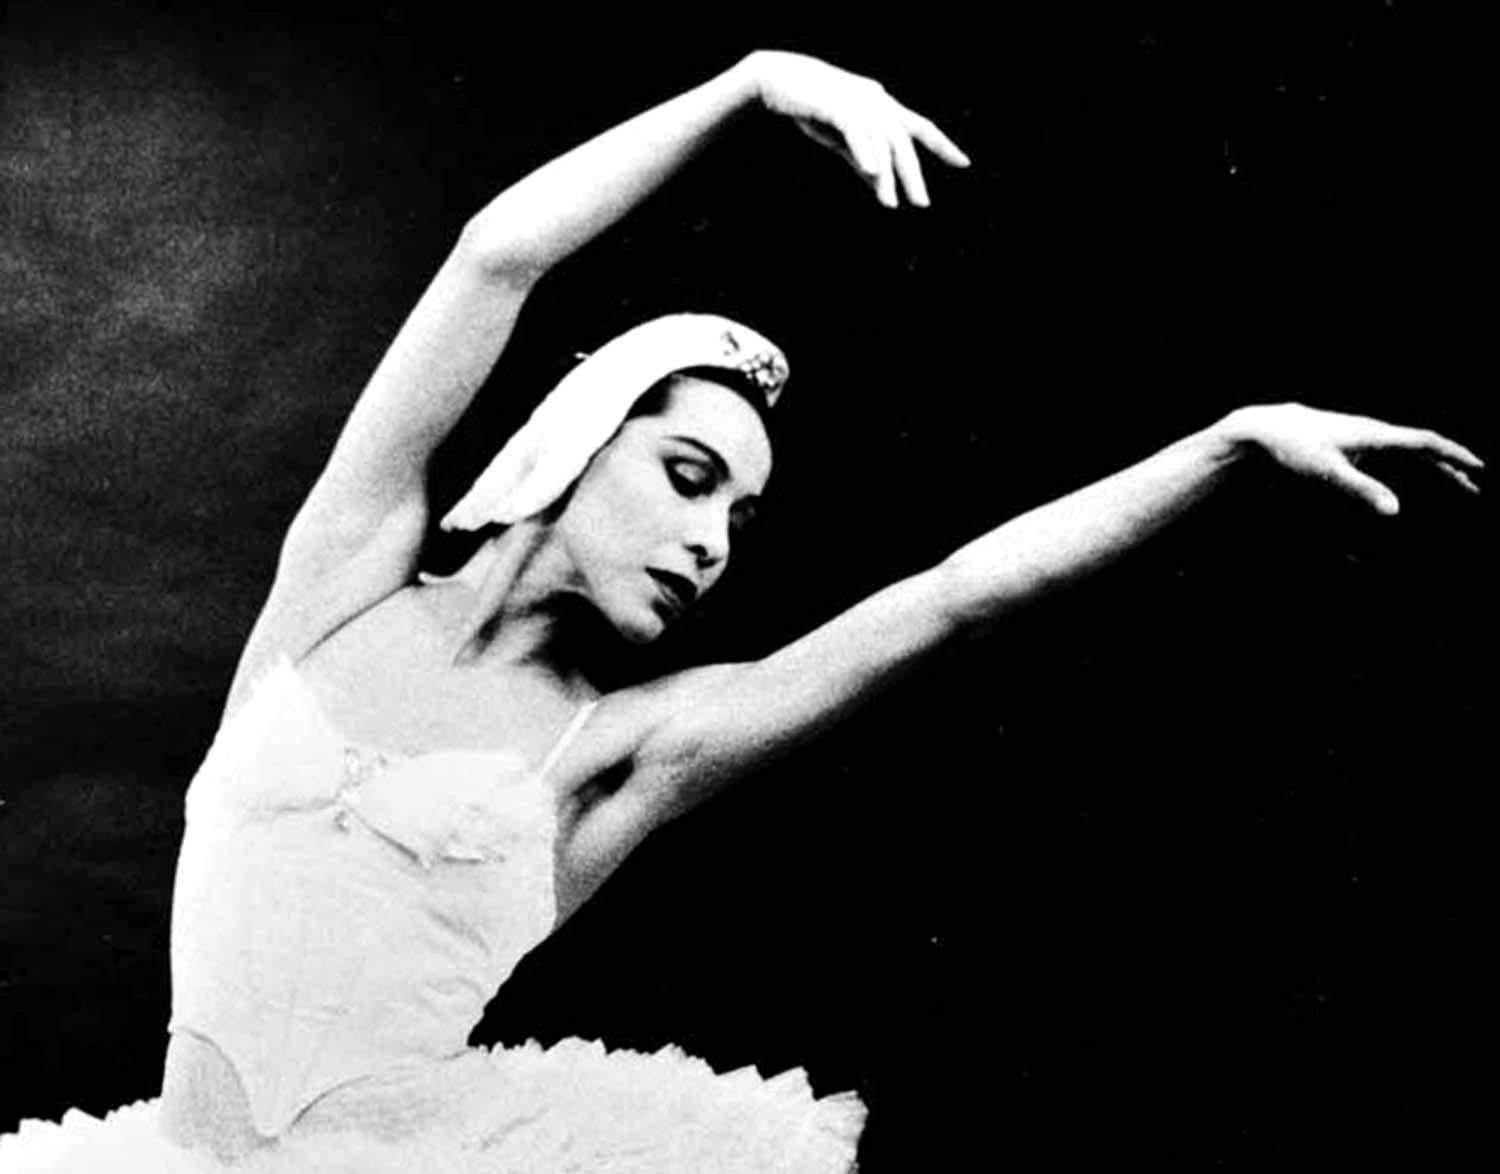 Native American Prima Ballerina Maria Tallchief in 